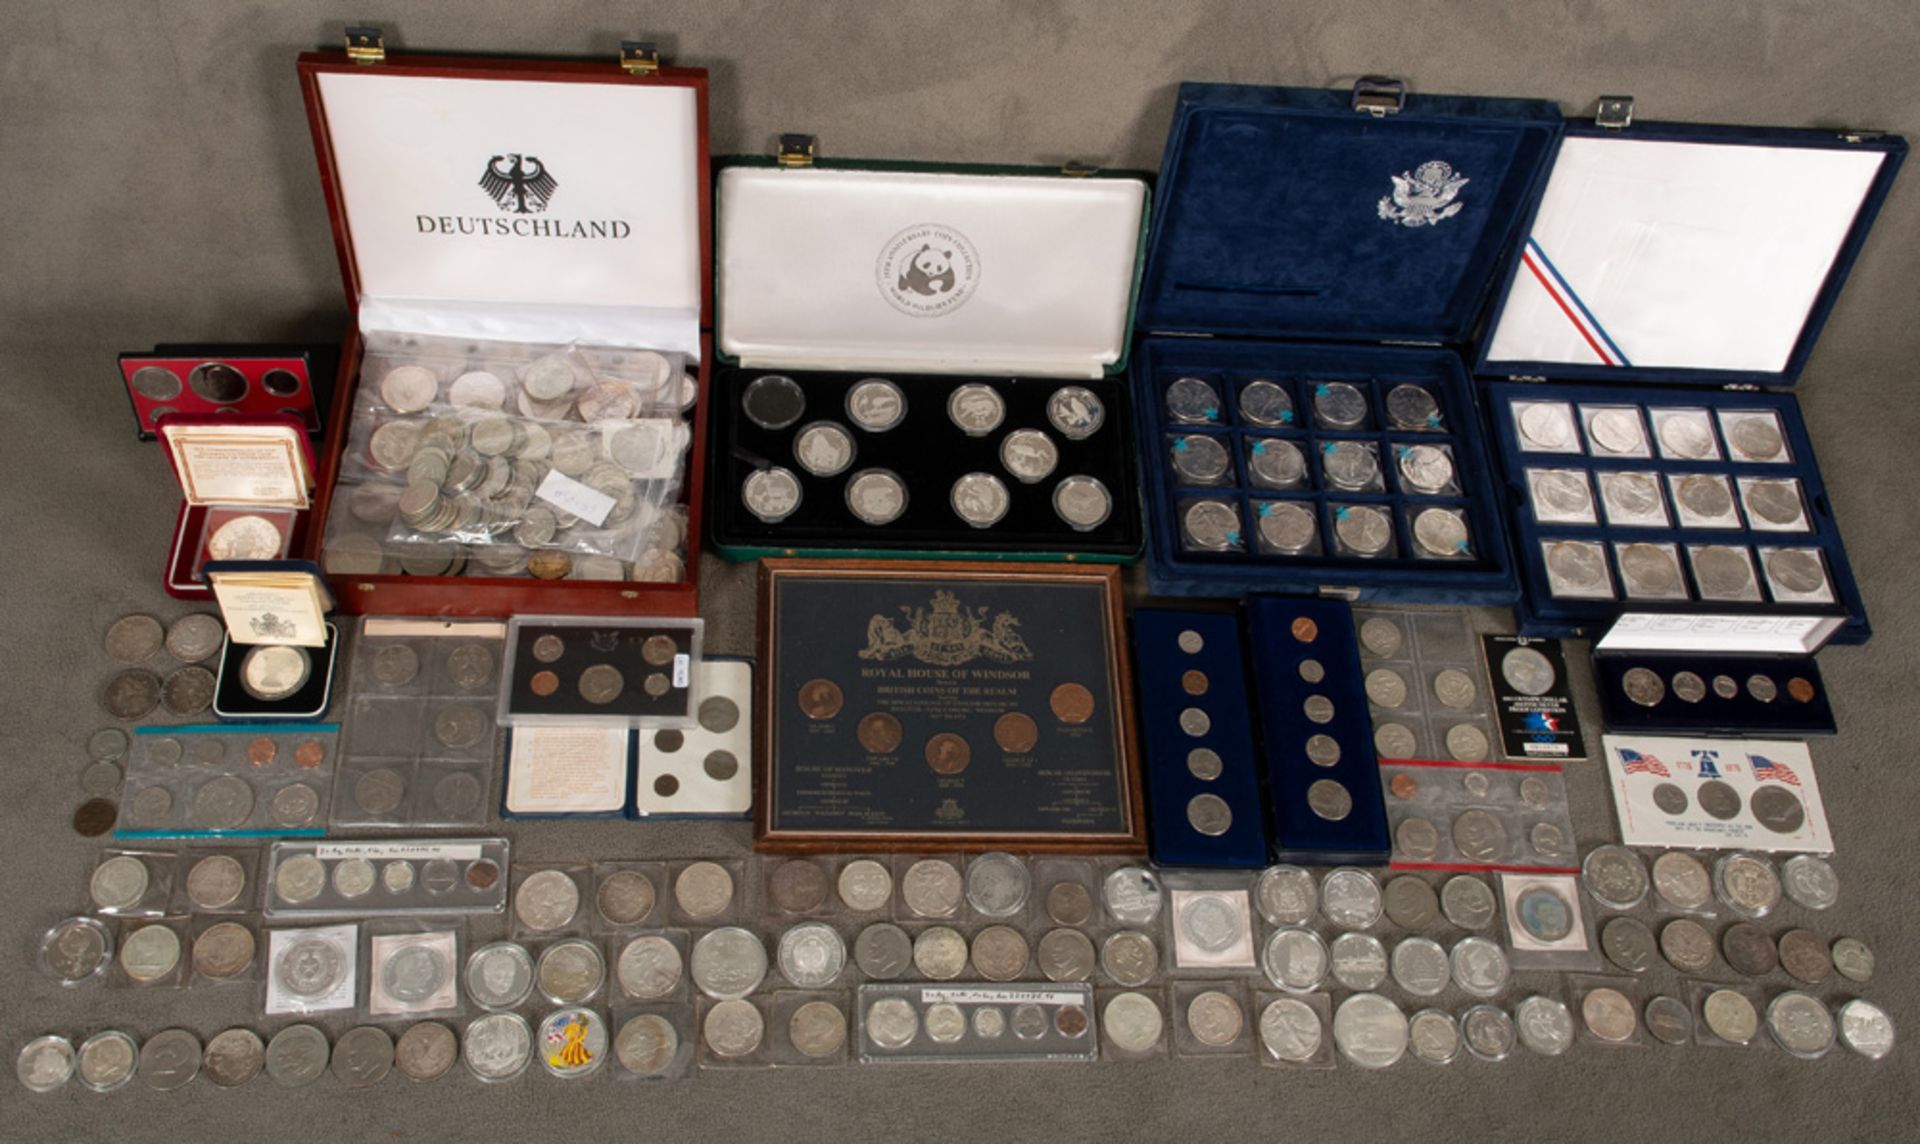 Konvolut Münzen, u.a. England, Kanada, USA. Metall, teilw. Silber (kann nicht gewogen werden).